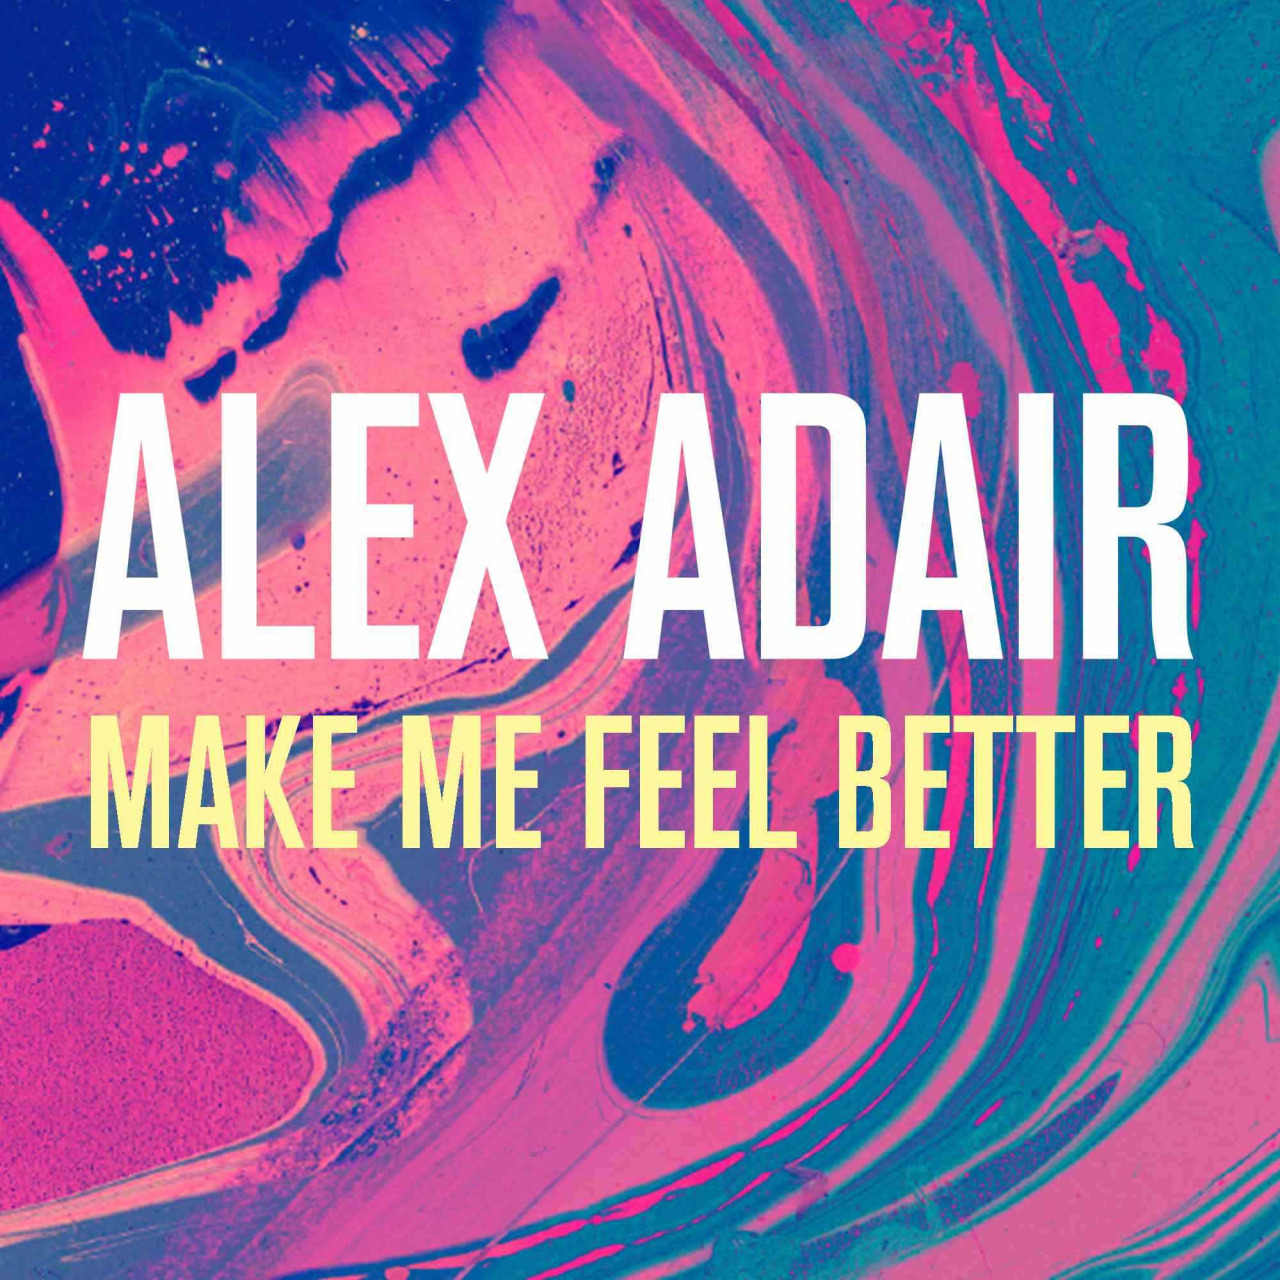 Alex Adair - Make Me Feel Better (illyus And Barrientos Remix) on Revolution Radio